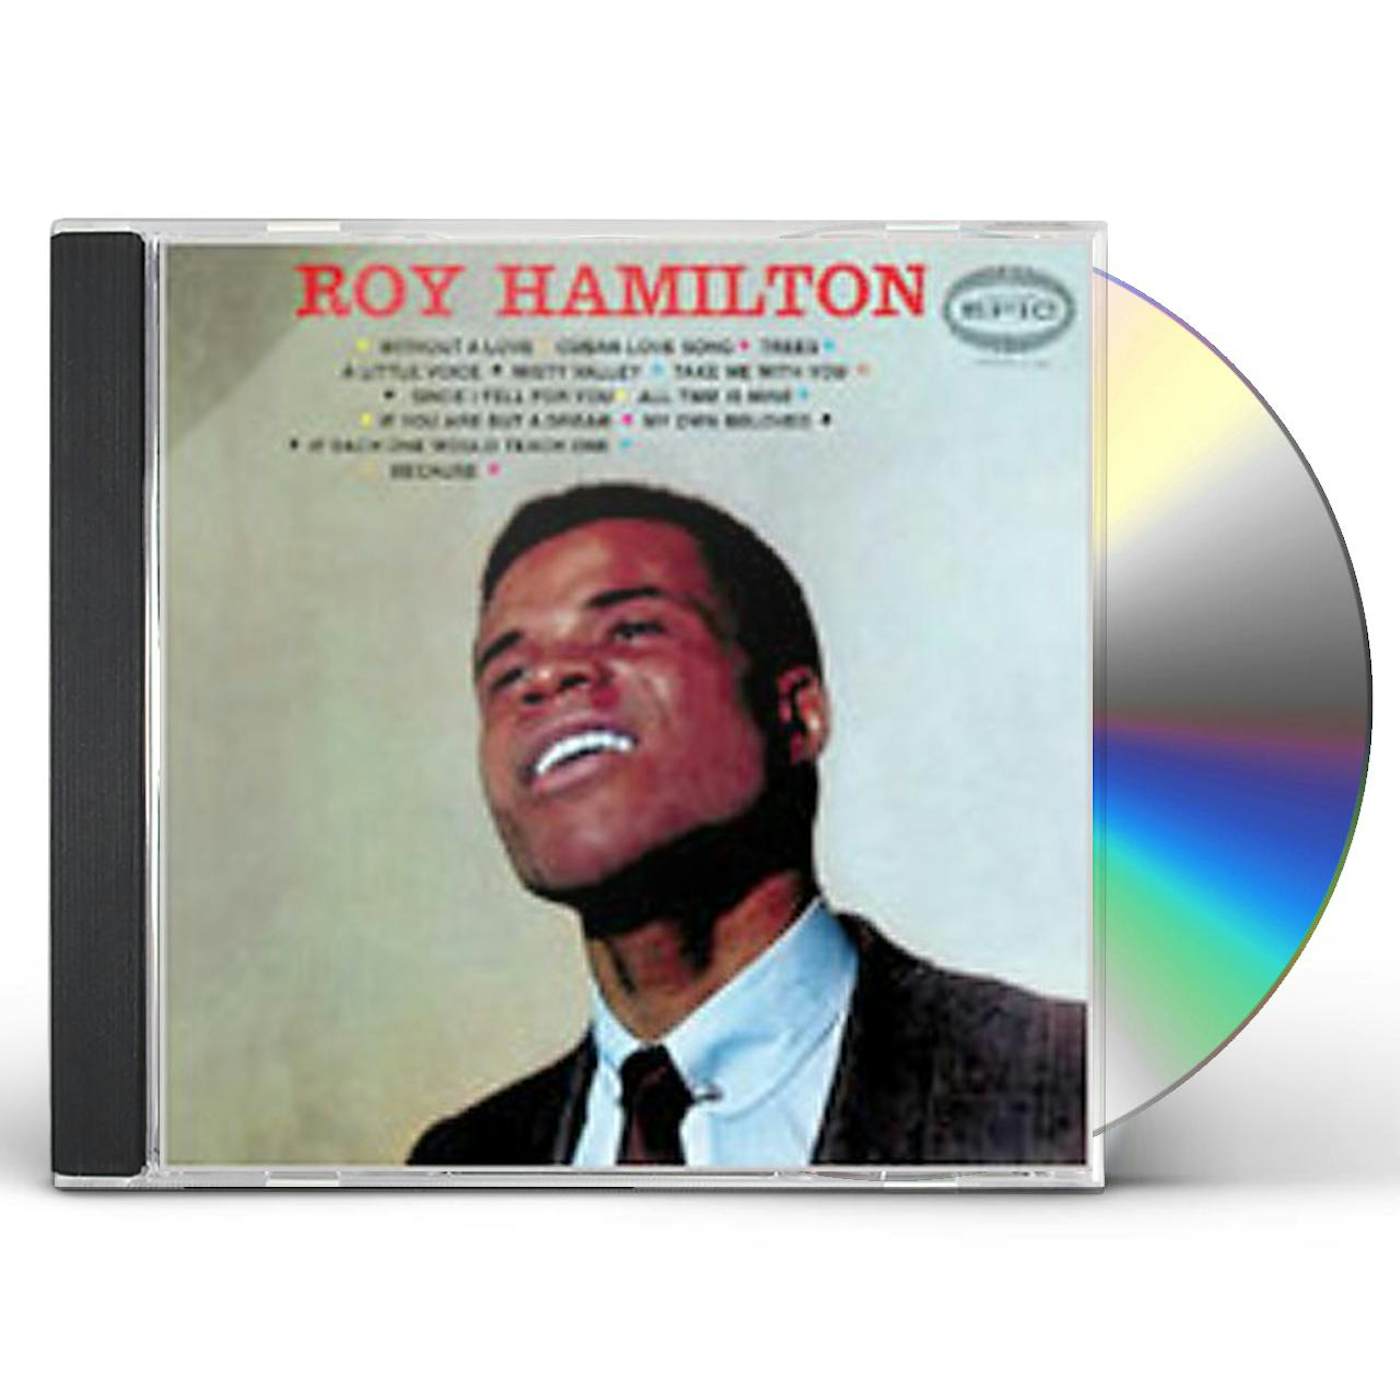 ROY HAMILTON CD